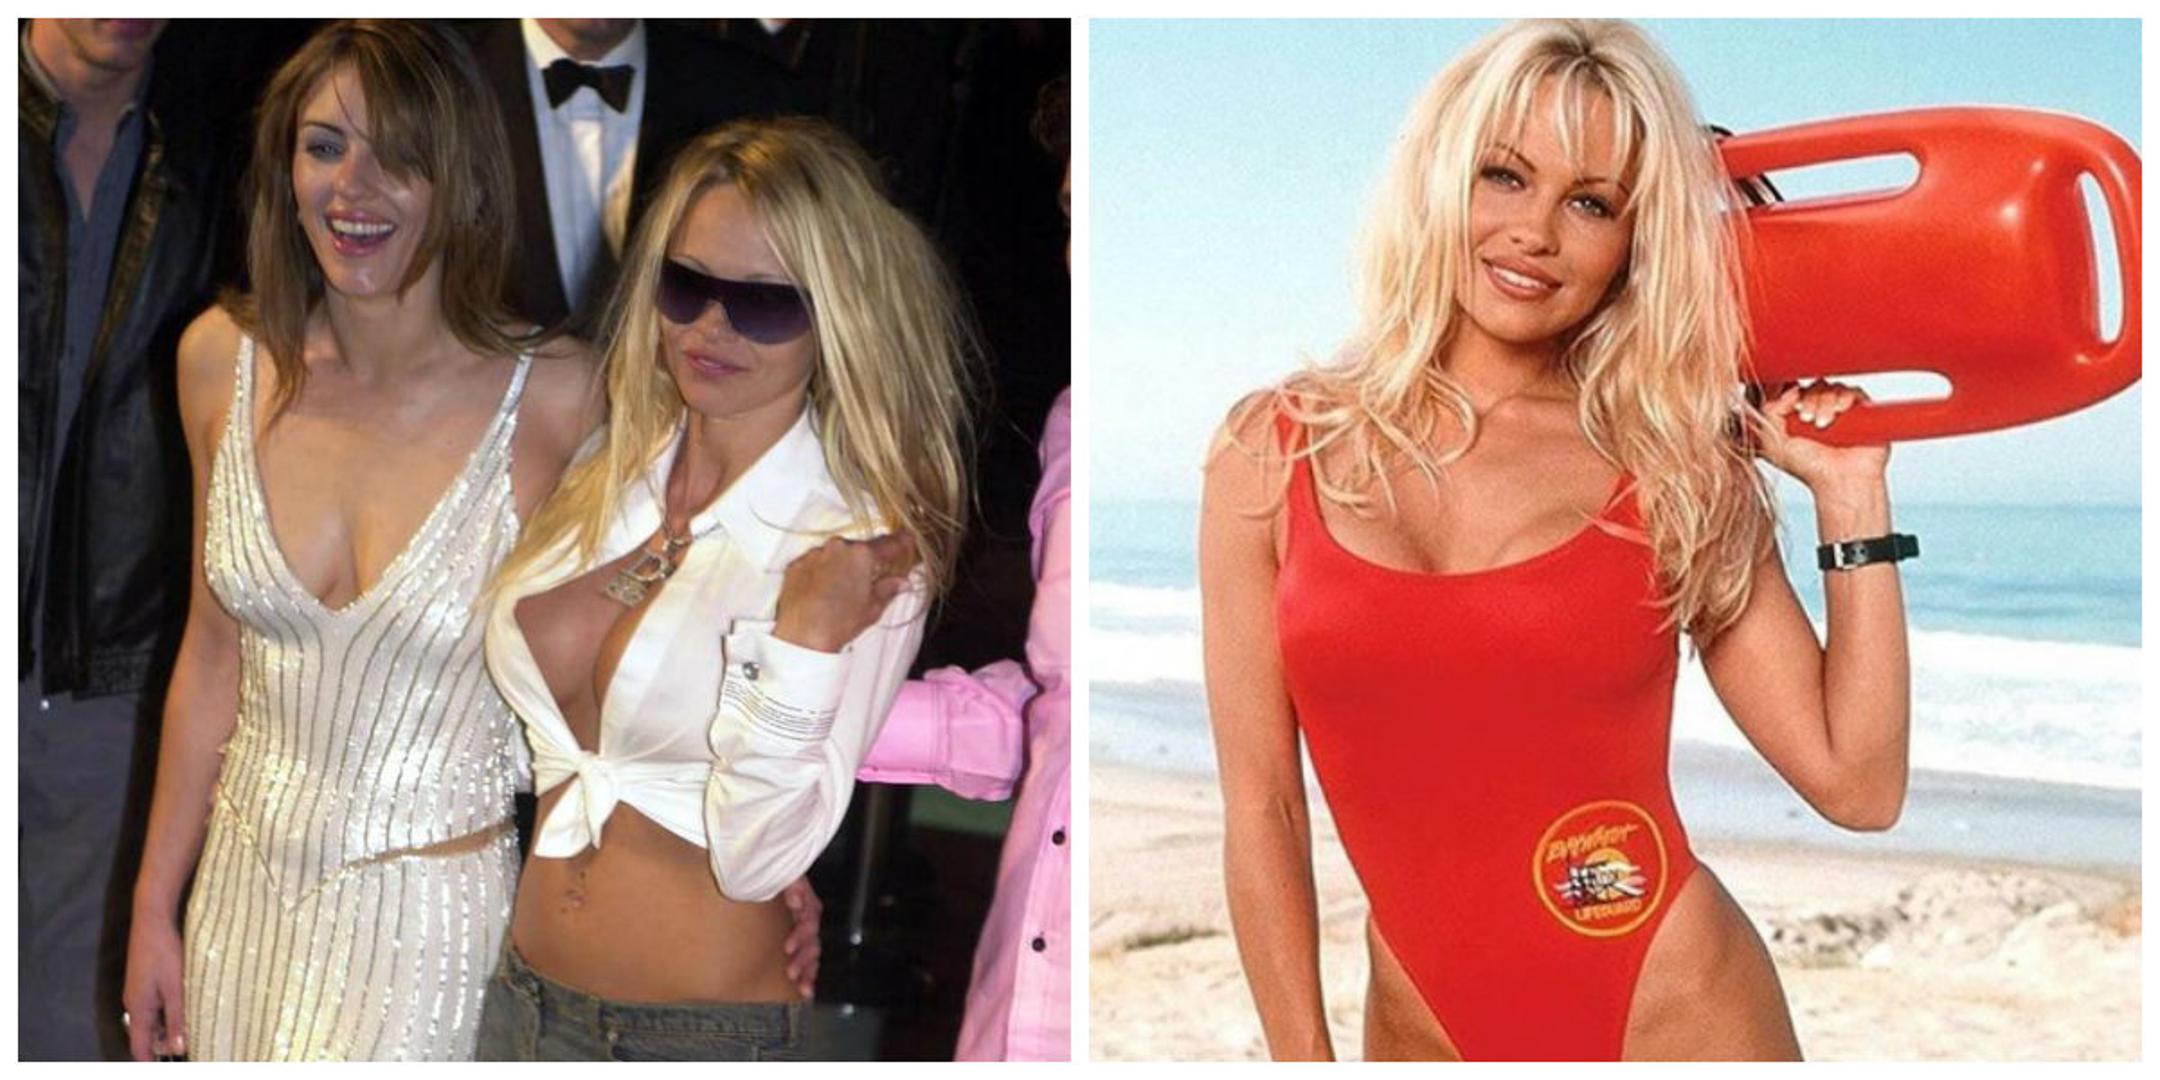 Seks ikona 90-ih godina Pamela Anderson ponovno se našla u središtu medijske pozornosti.